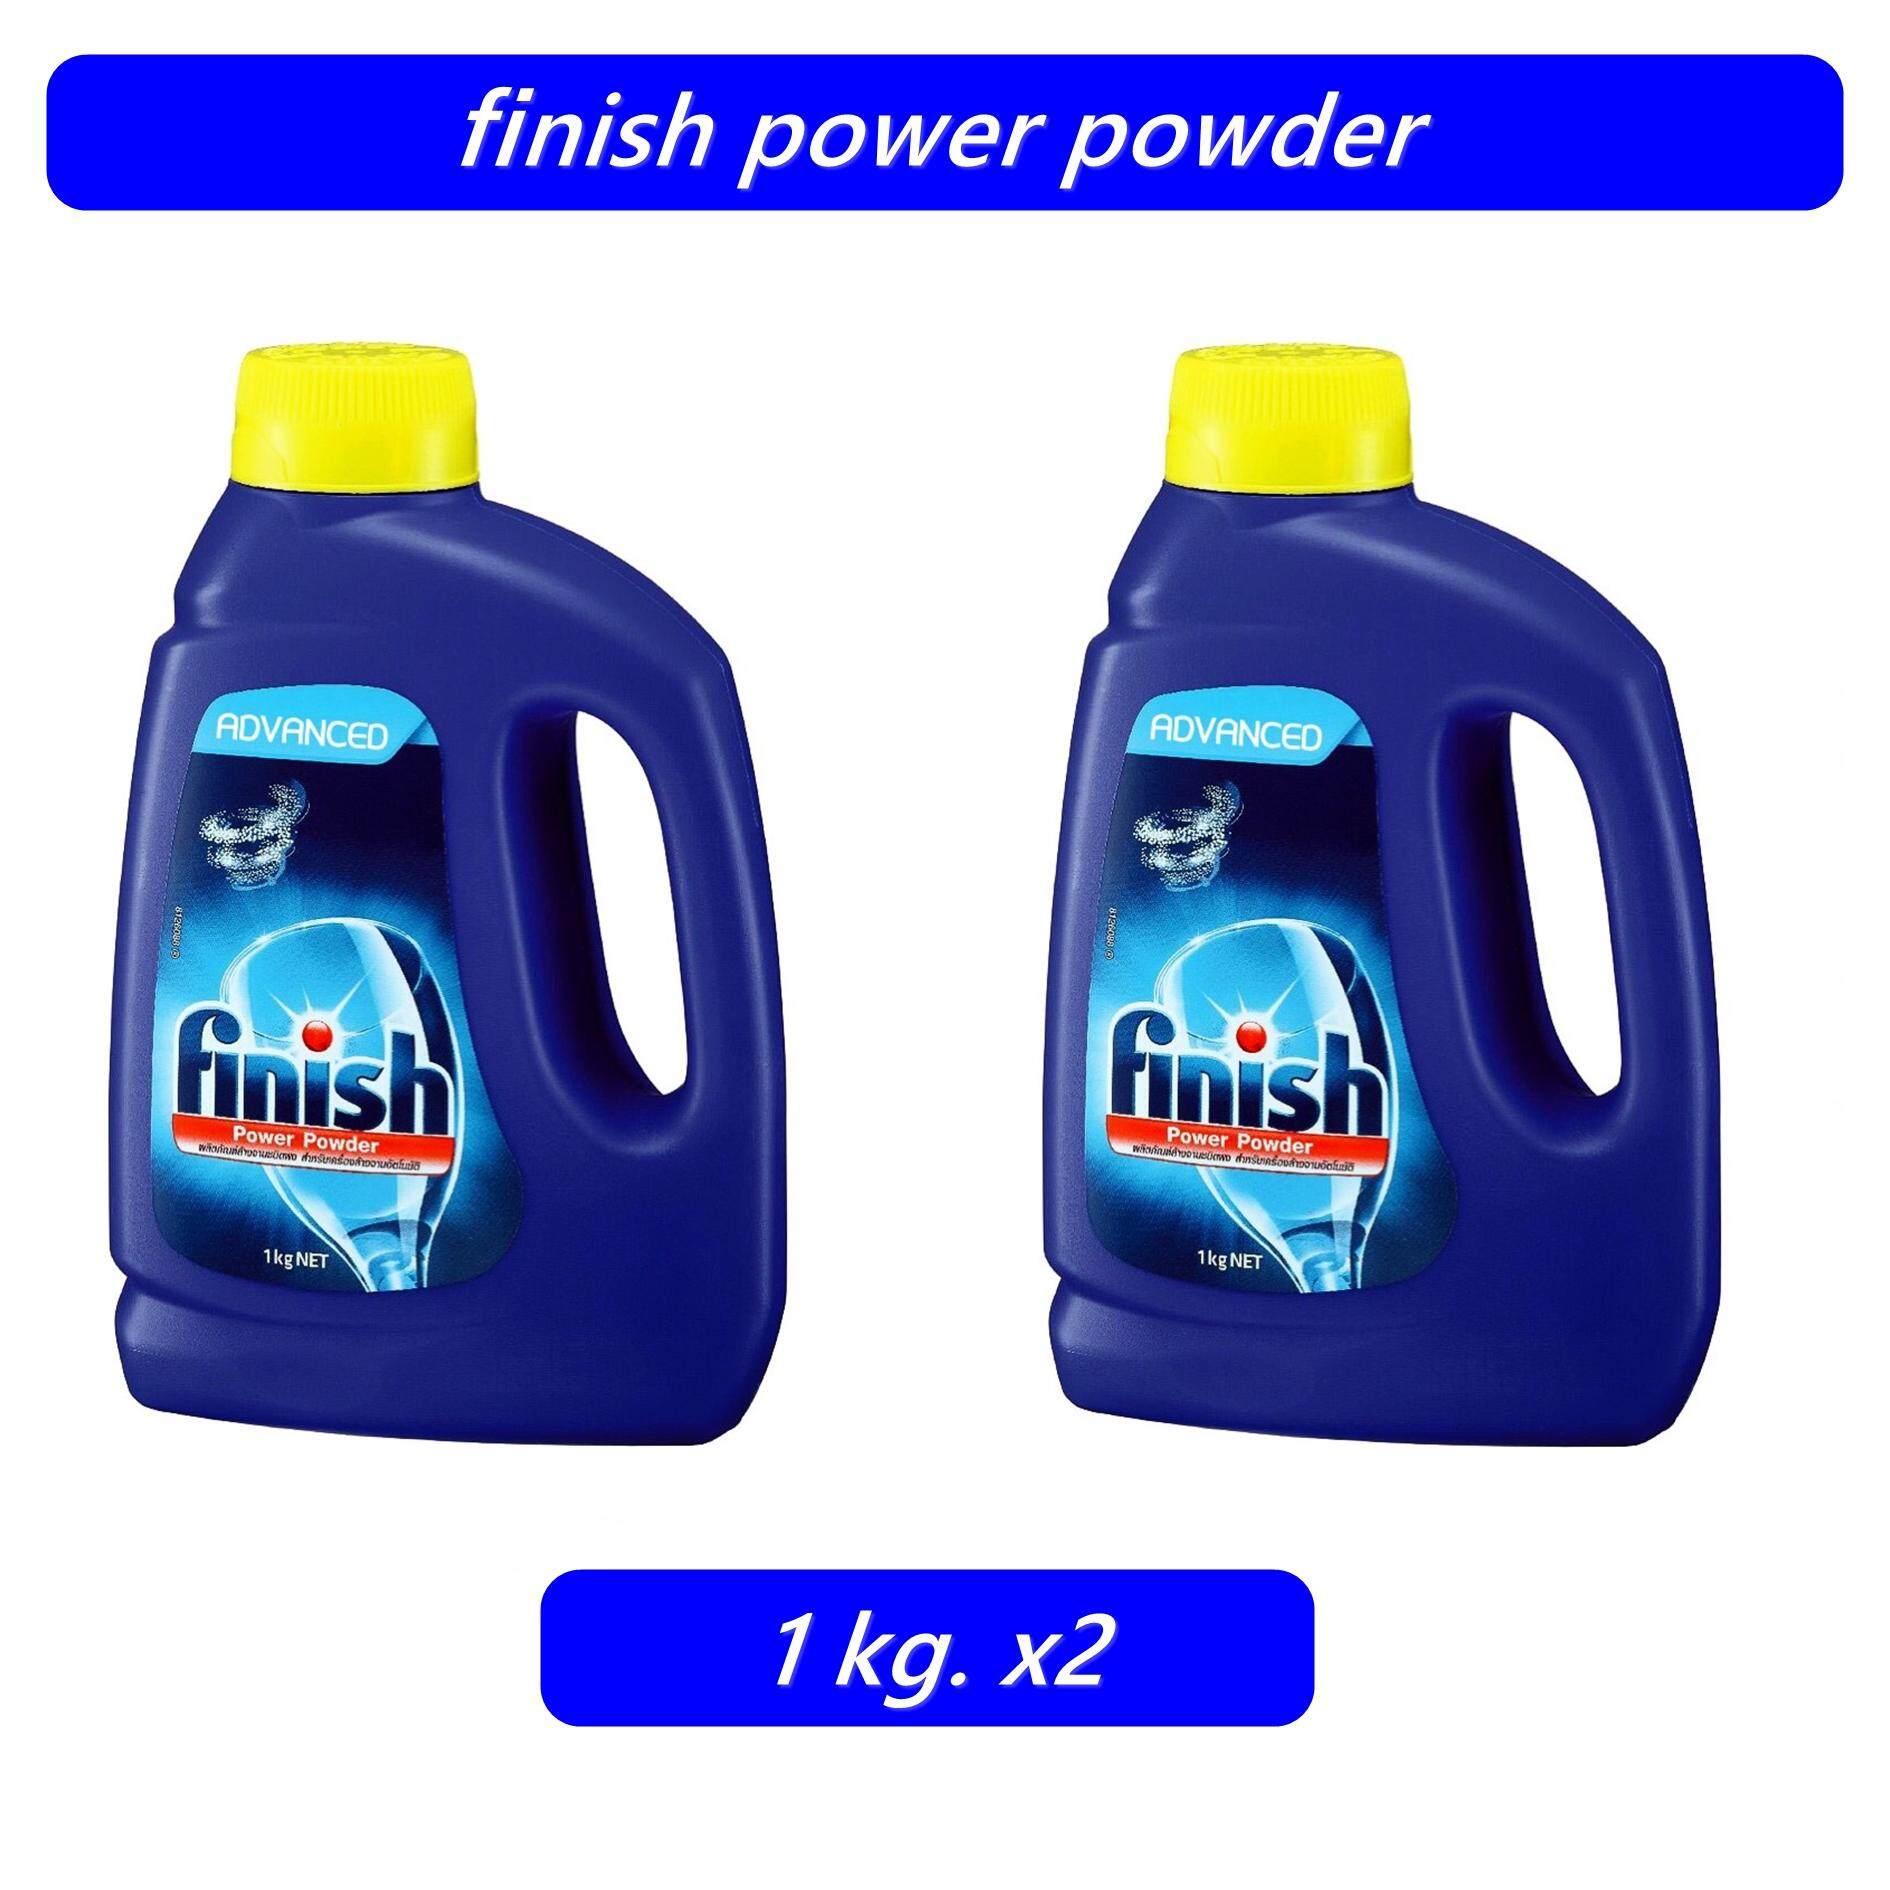 finish power powder 2 ขวด ผลิตภัณฑ์ล้างจาน สำหรับเครื่องล้างจานอัตโนมัติ